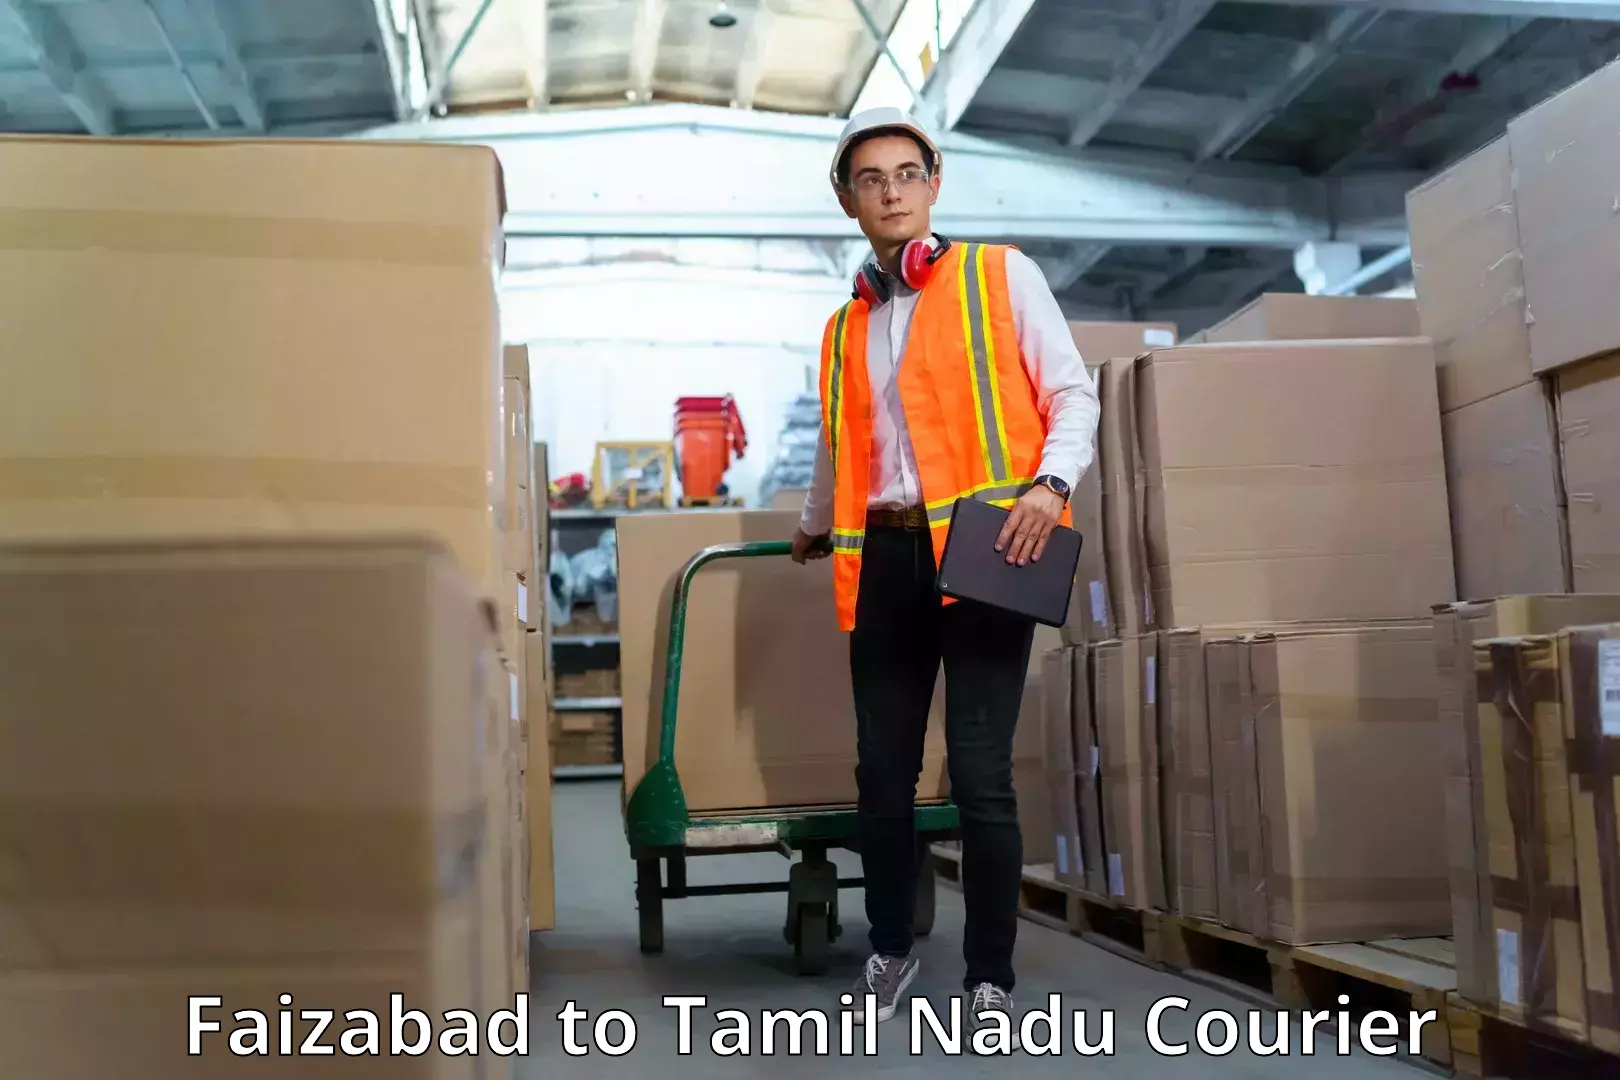 Next-generation courier services Faizabad to Melur